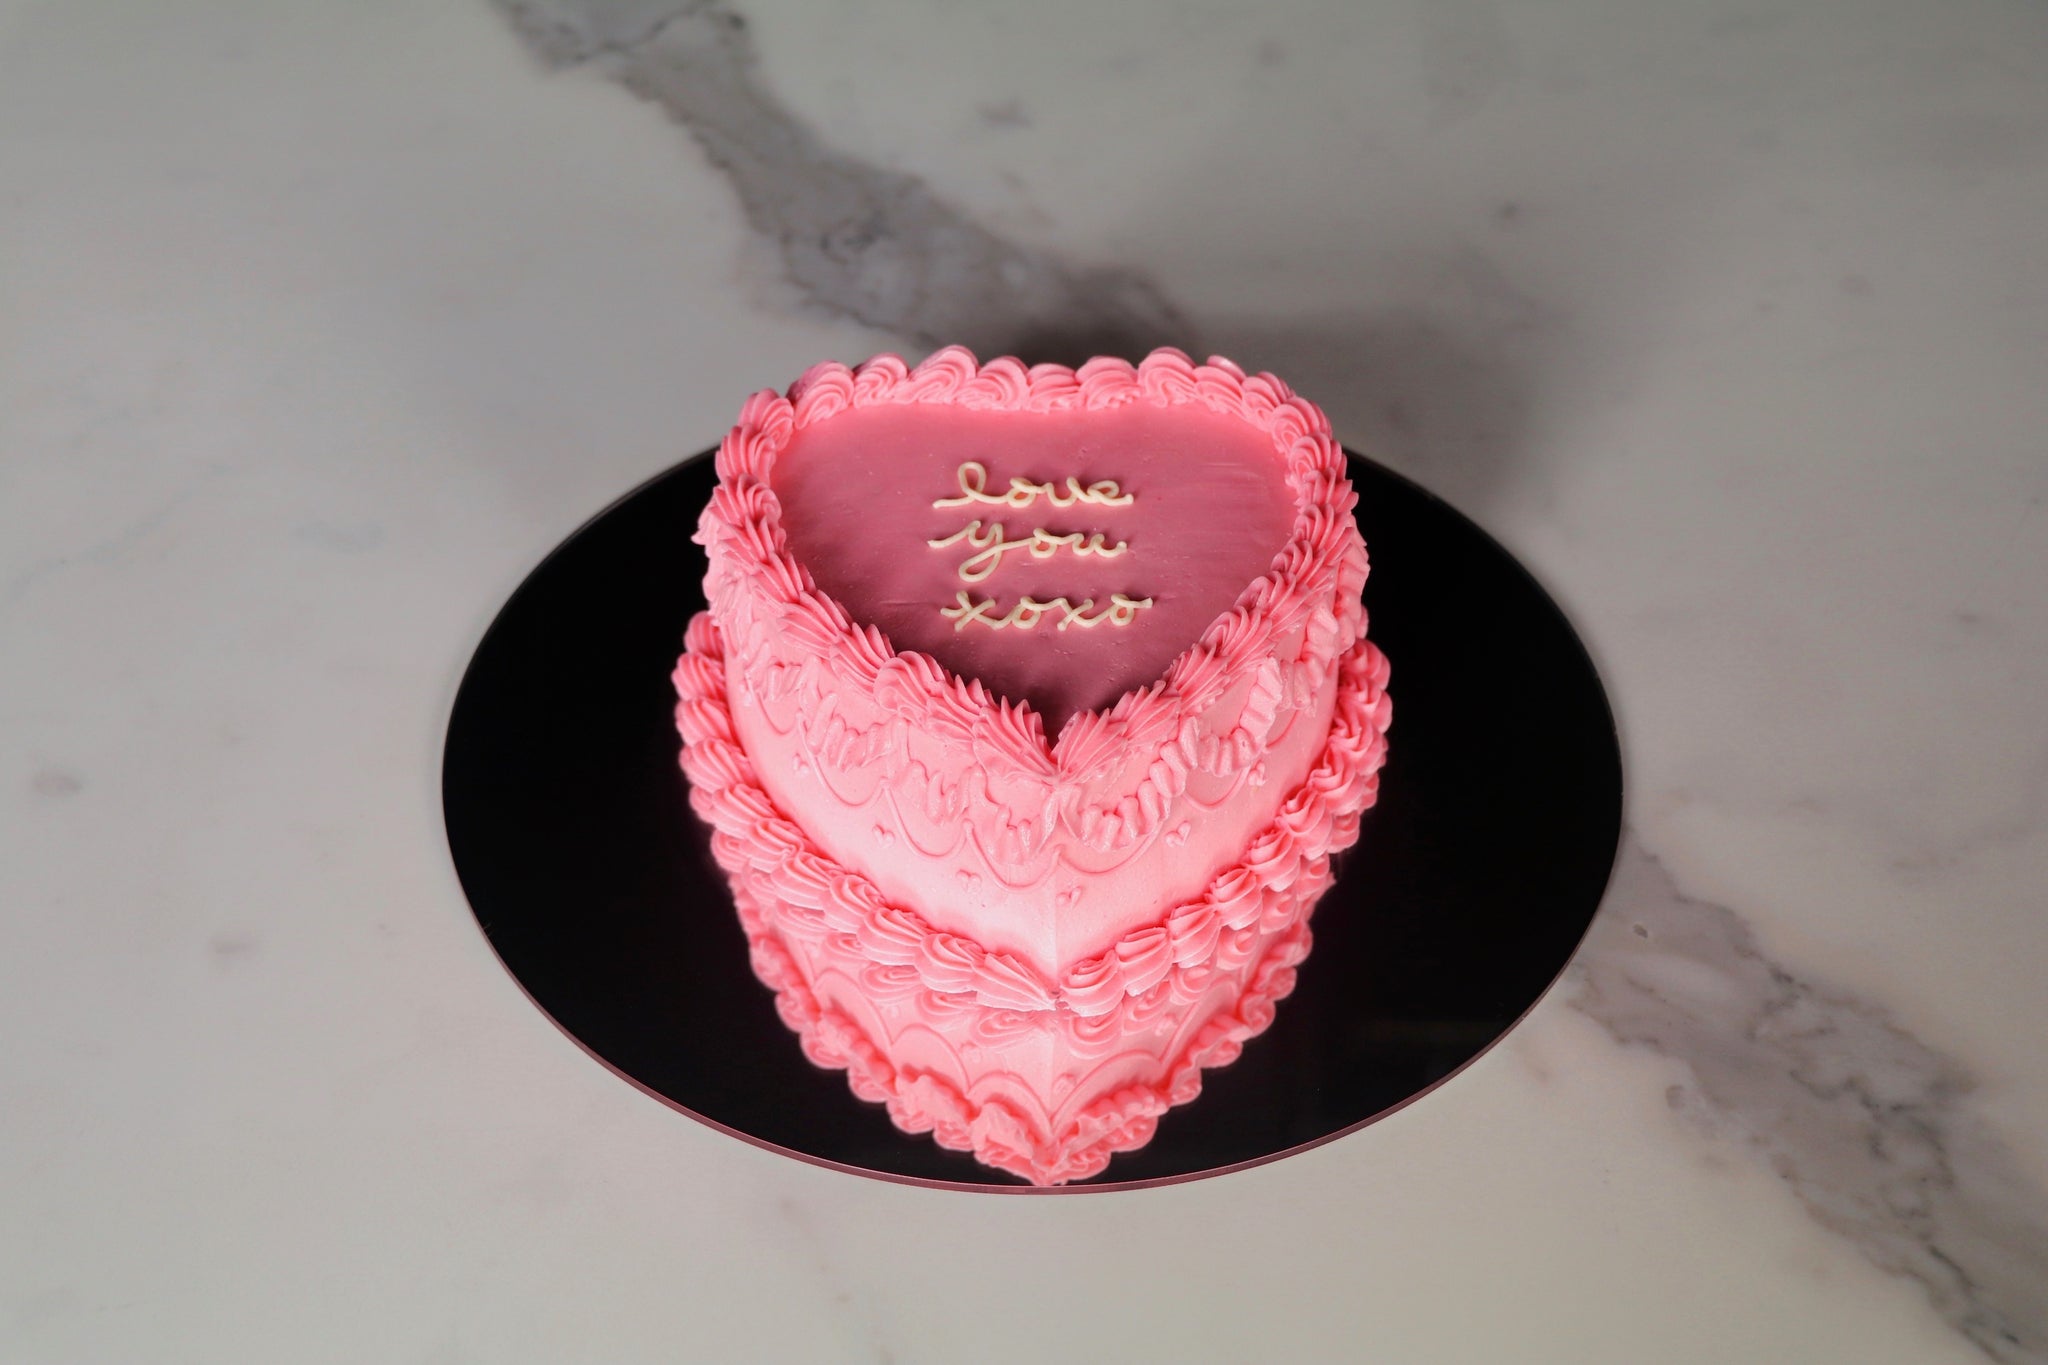 XoXo Cake Boutique - Wedding Cake - Manassas, VA - WeddingWire